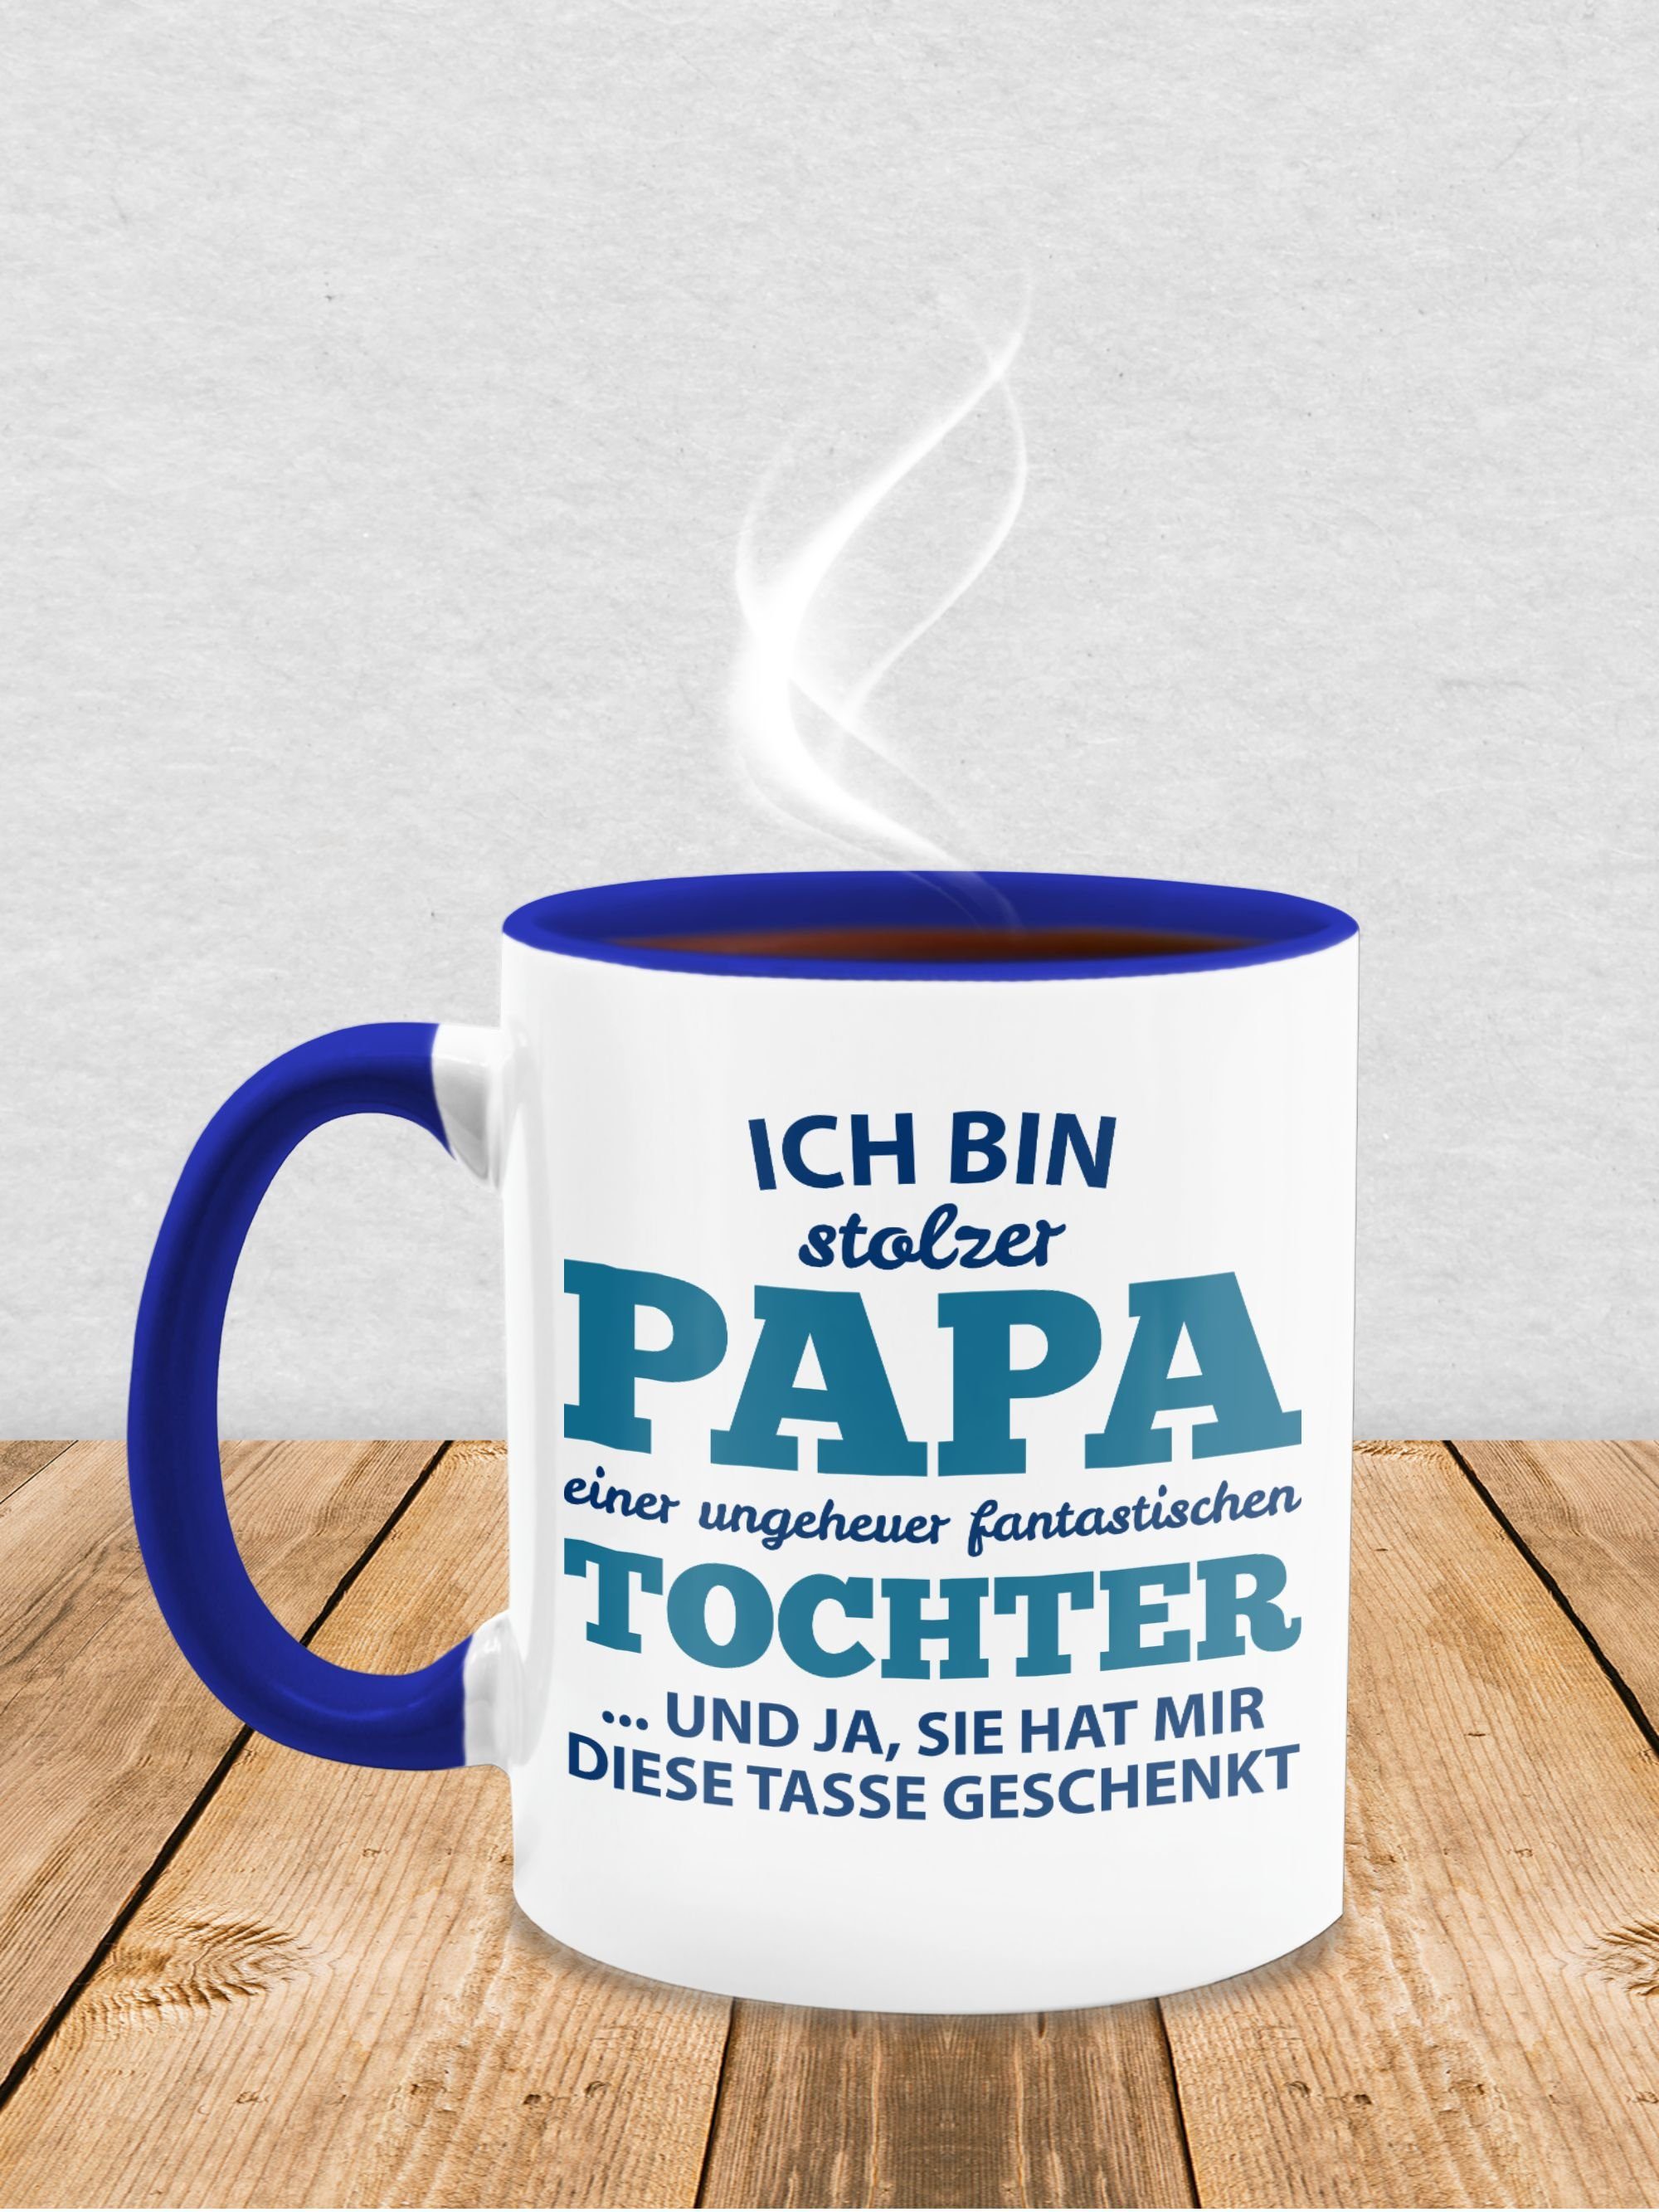 3 Tochter Vatertag Tasse, Kaffeetasse Tasse fantastischen Geschenk Shirtracer Papa Keramik, Stolzer einer Dunkelblau